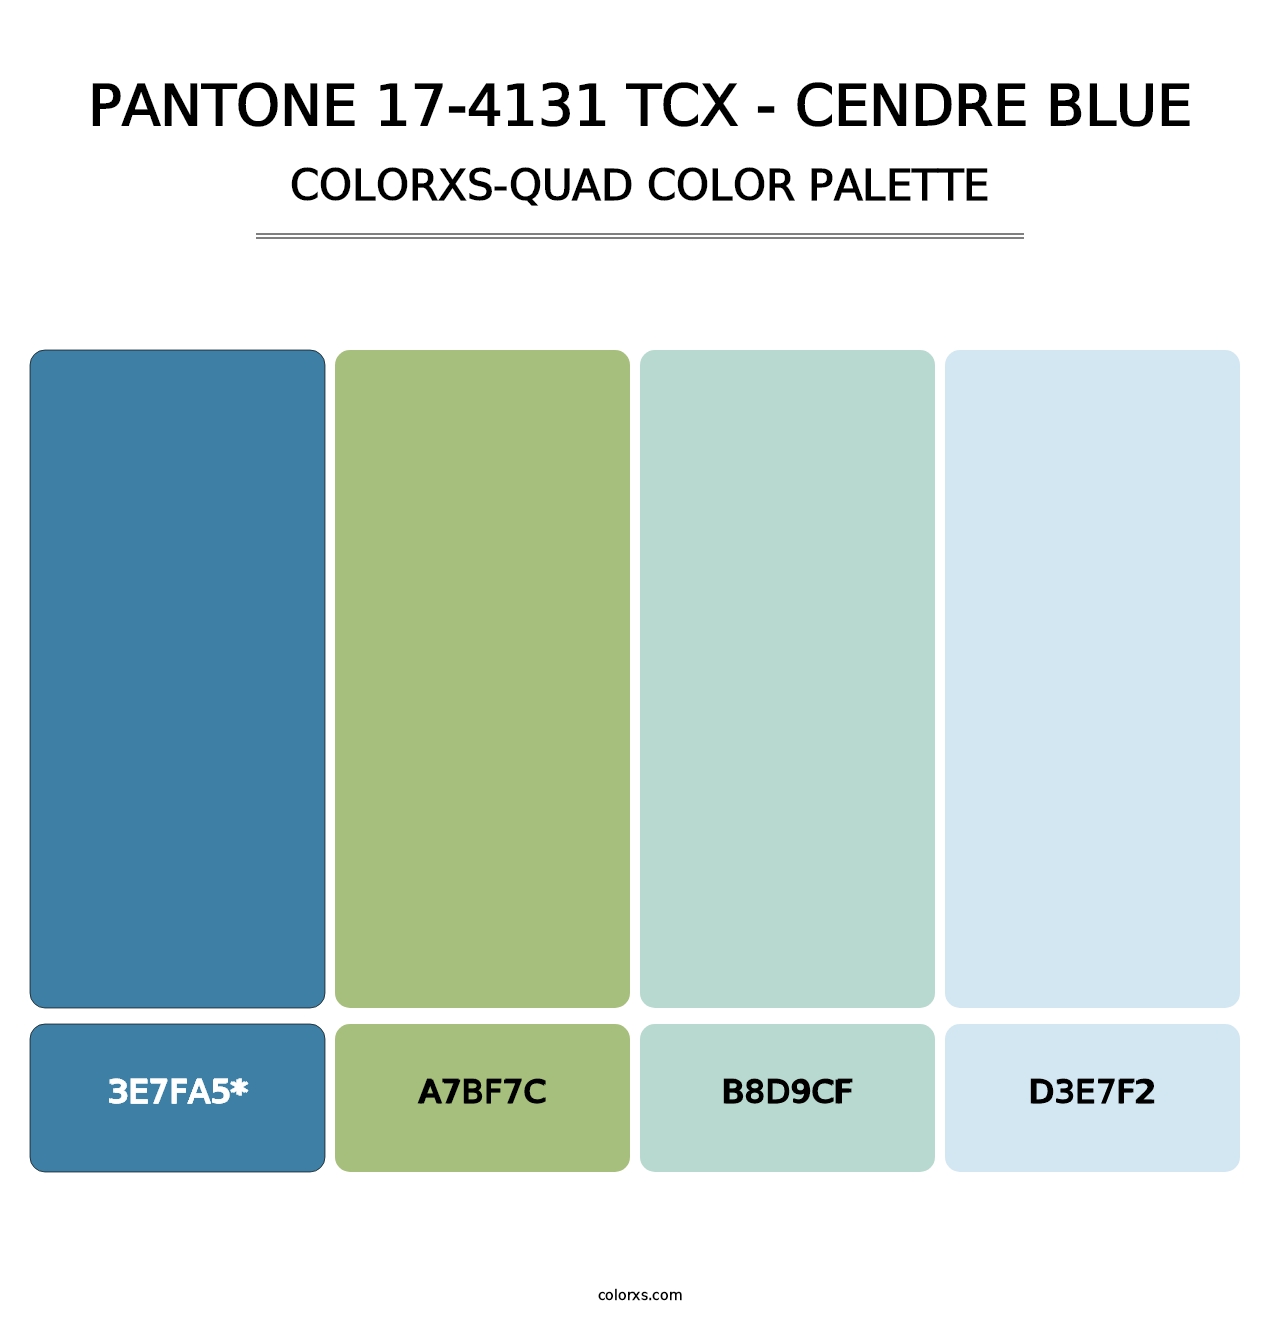 PANTONE 17-4131 TCX - Cendre Blue - Colorxs Quad Palette